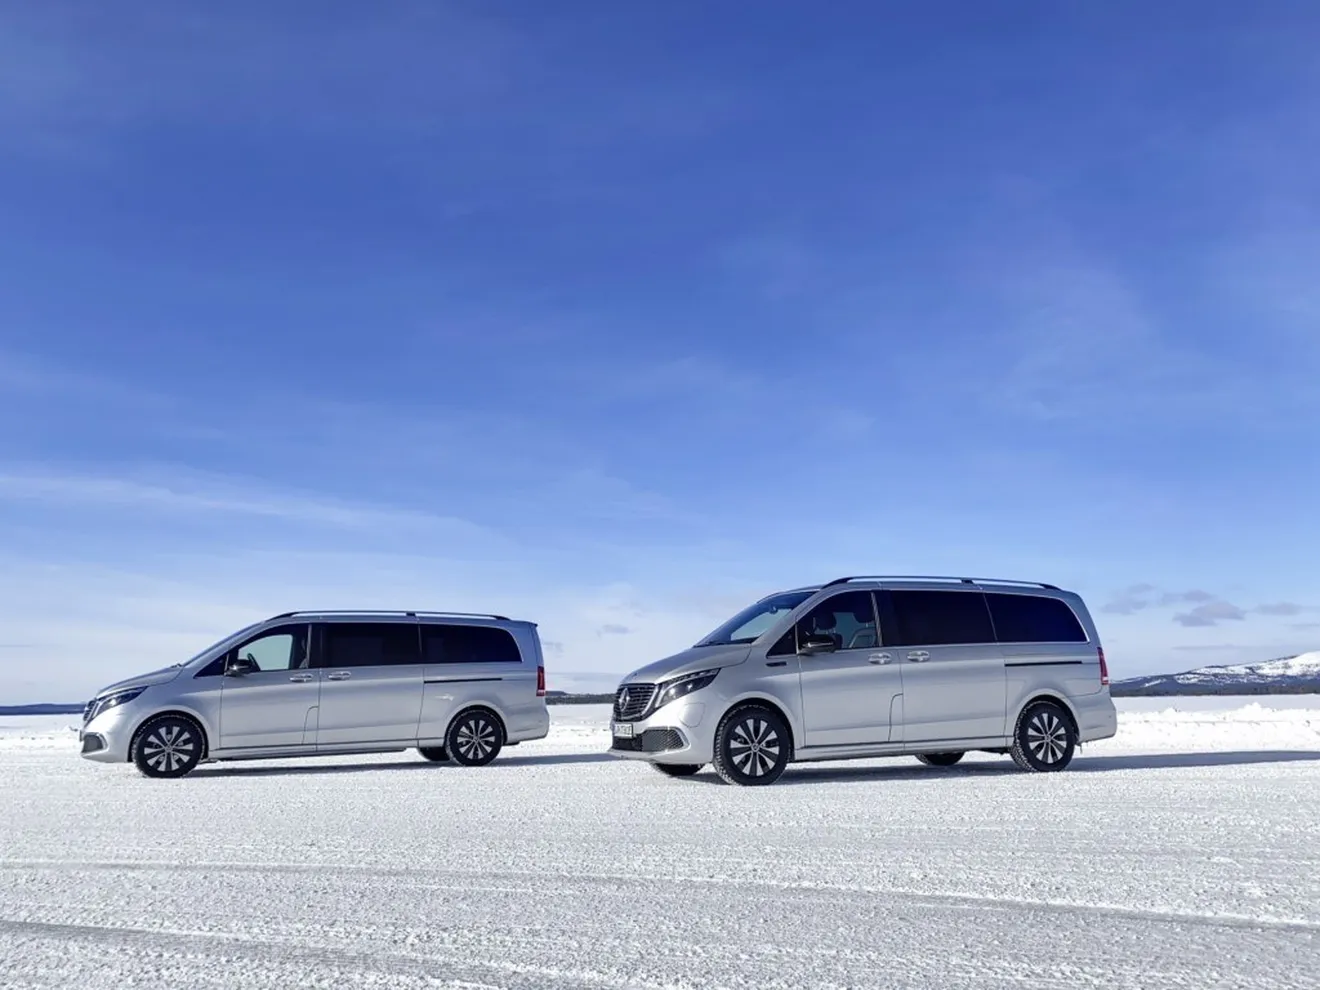 Mercedes explica los ensayos de frío extremo del nuevo eléctrico EQV en Suecia